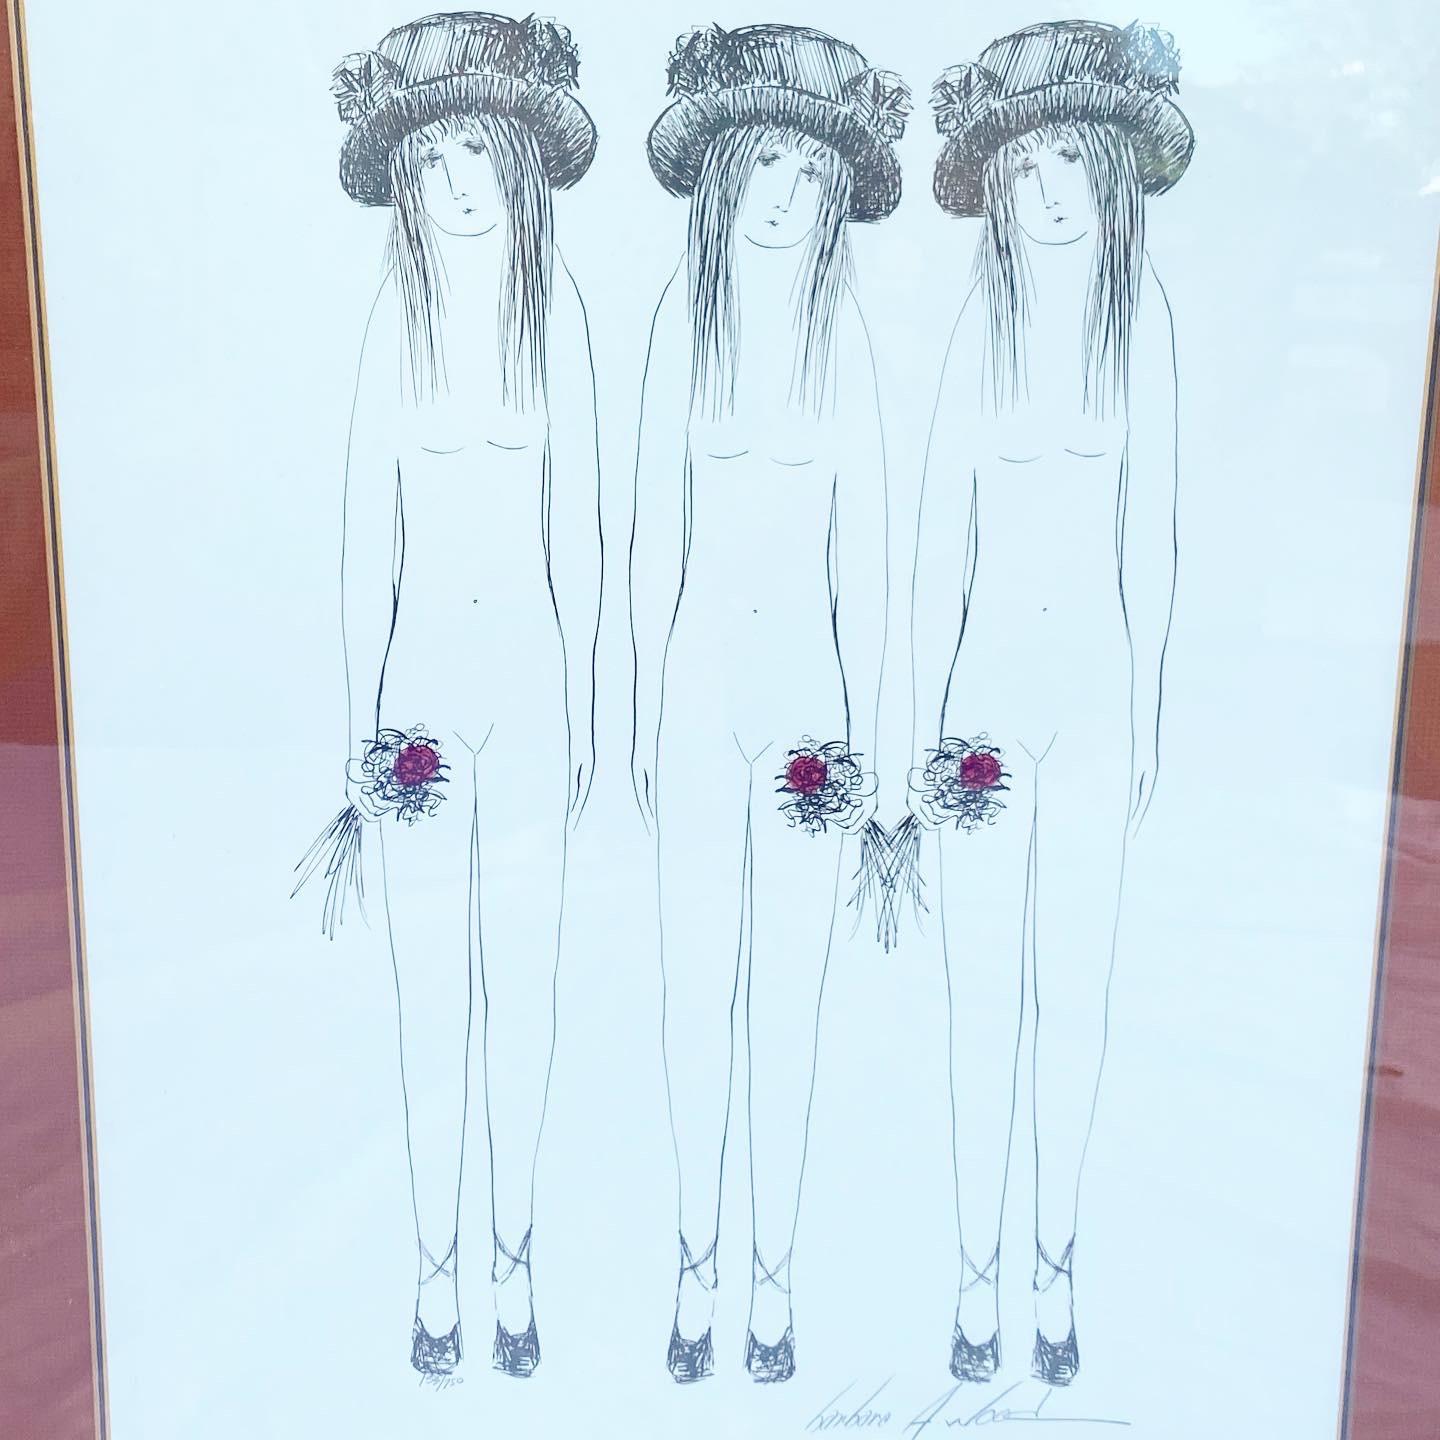 Belle lithographie signée et numérotée représentant trois sœurs portant des chapeaux et tenant des fleurs.

Barbara Wood est originaire de Columbus, dans l'Ohio. Barbara, qui n'a jamais connu son vrai père, a été élevée par sa mère, sa grand-mère